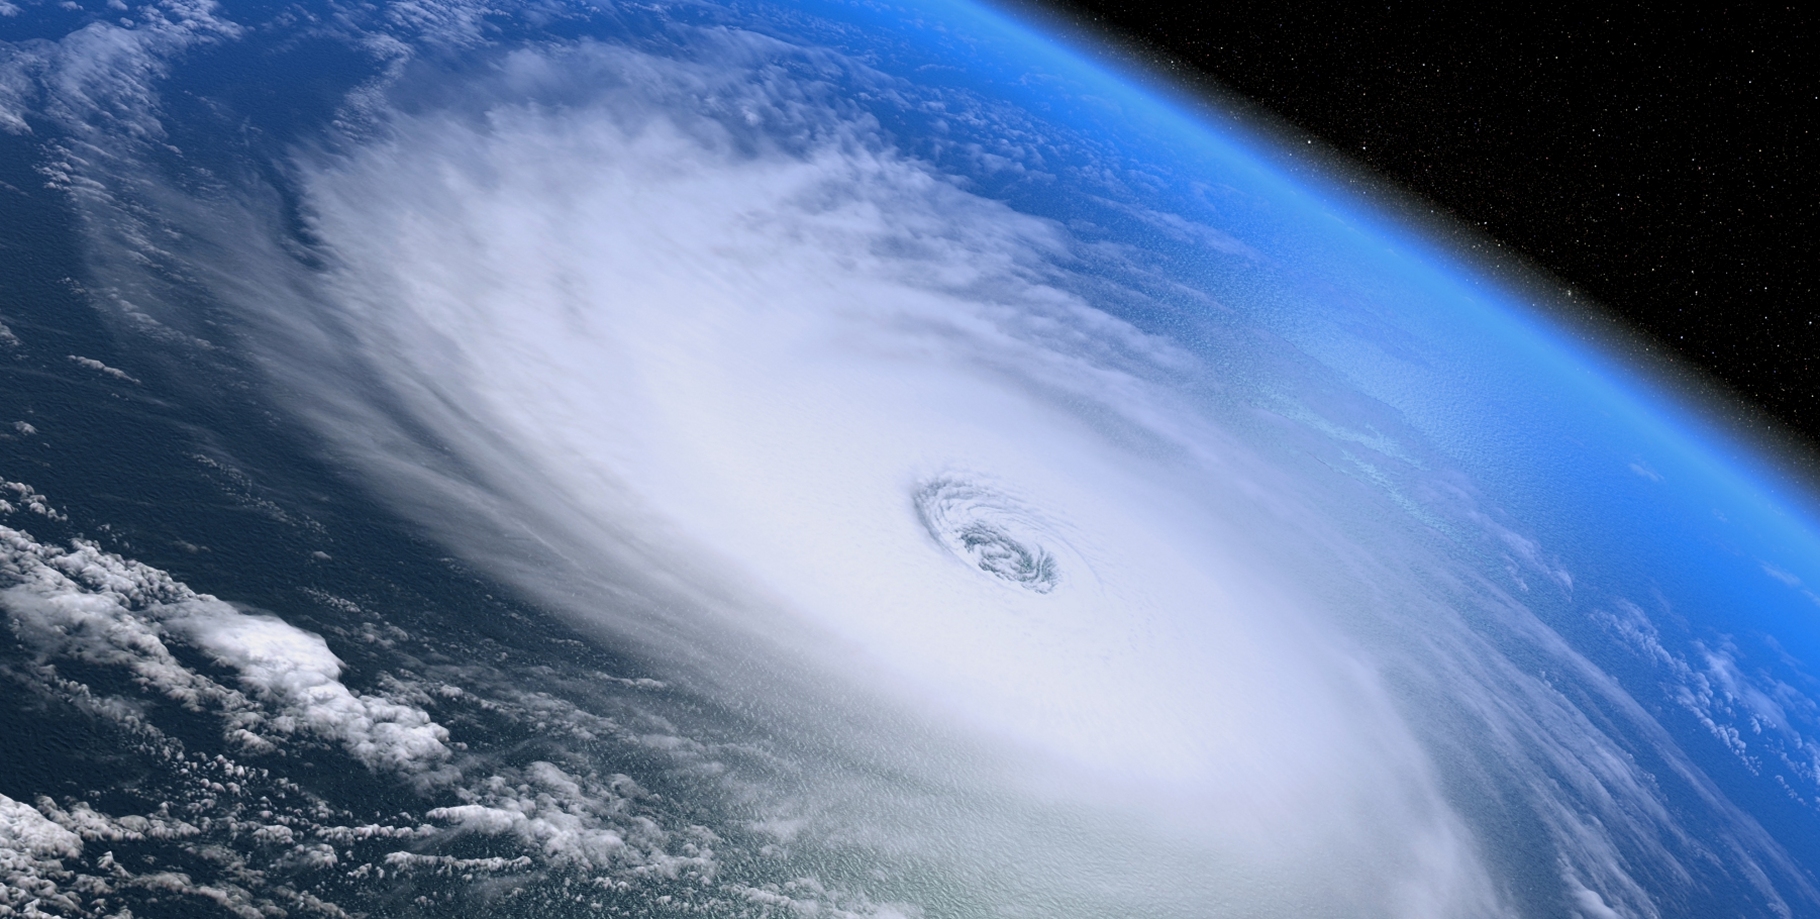 Un cyclone tropical vu de l'espace. Cette masse d'air tournante engendre des vents très puissants et représente une énergie colossale. Pourquoi ne pas tenter d'en extraire une minuscule partie ? © 3dmotus, Shutterstock